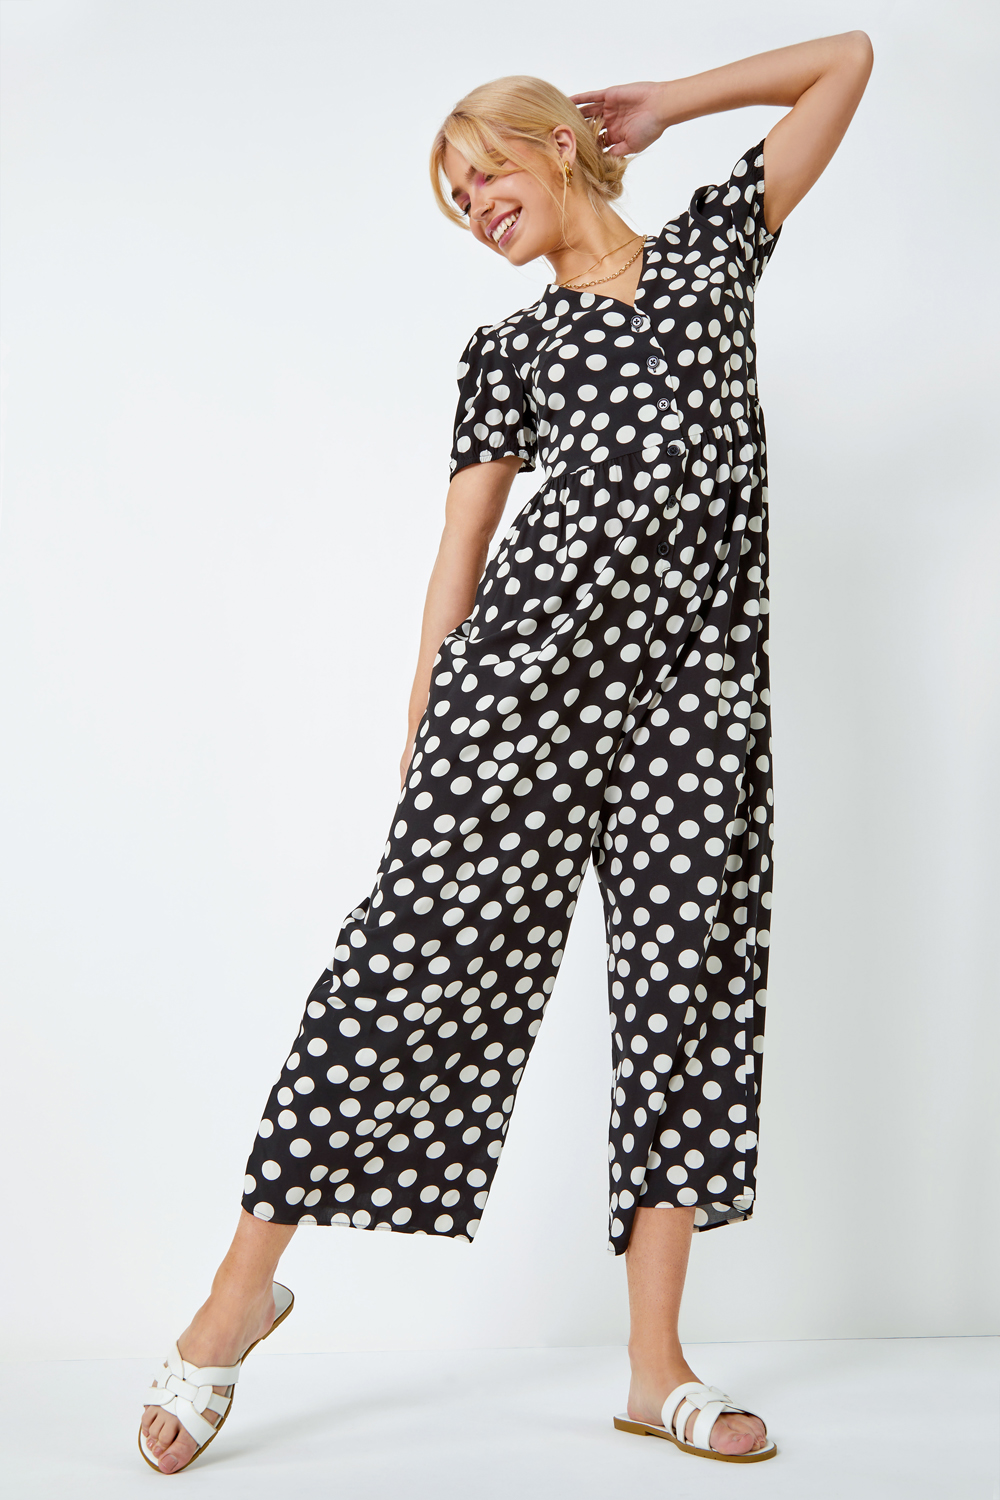 Black Polka Dot Print Culotte Jumpsuit, Image 2 of 5